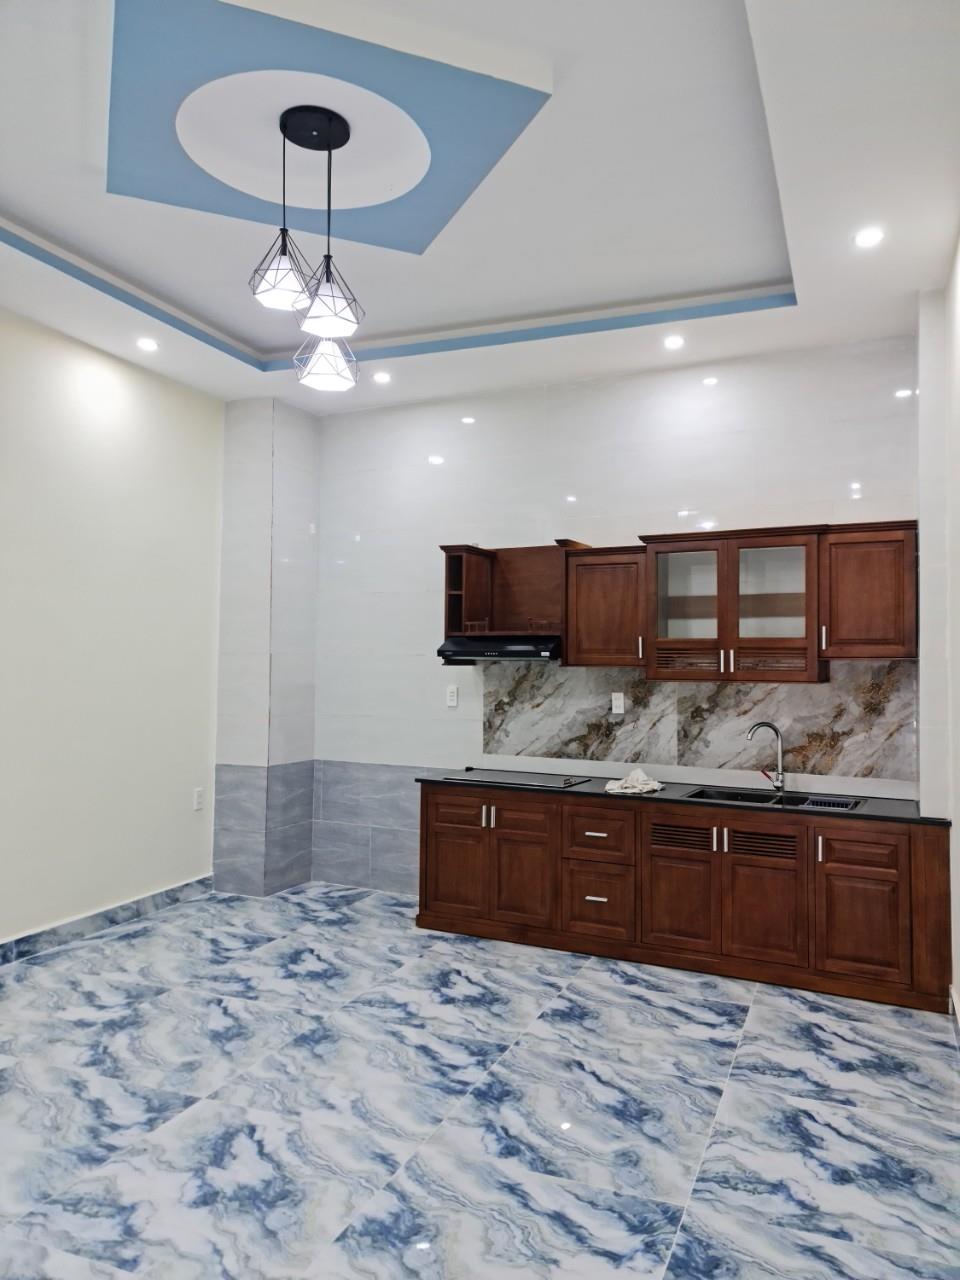 Cho thuê nhà mặt tiền mới xây 4 tầng có thang máy tại Đường Phước Thành, Phường 7, Đà Lạt, Lâm Đồng1213465